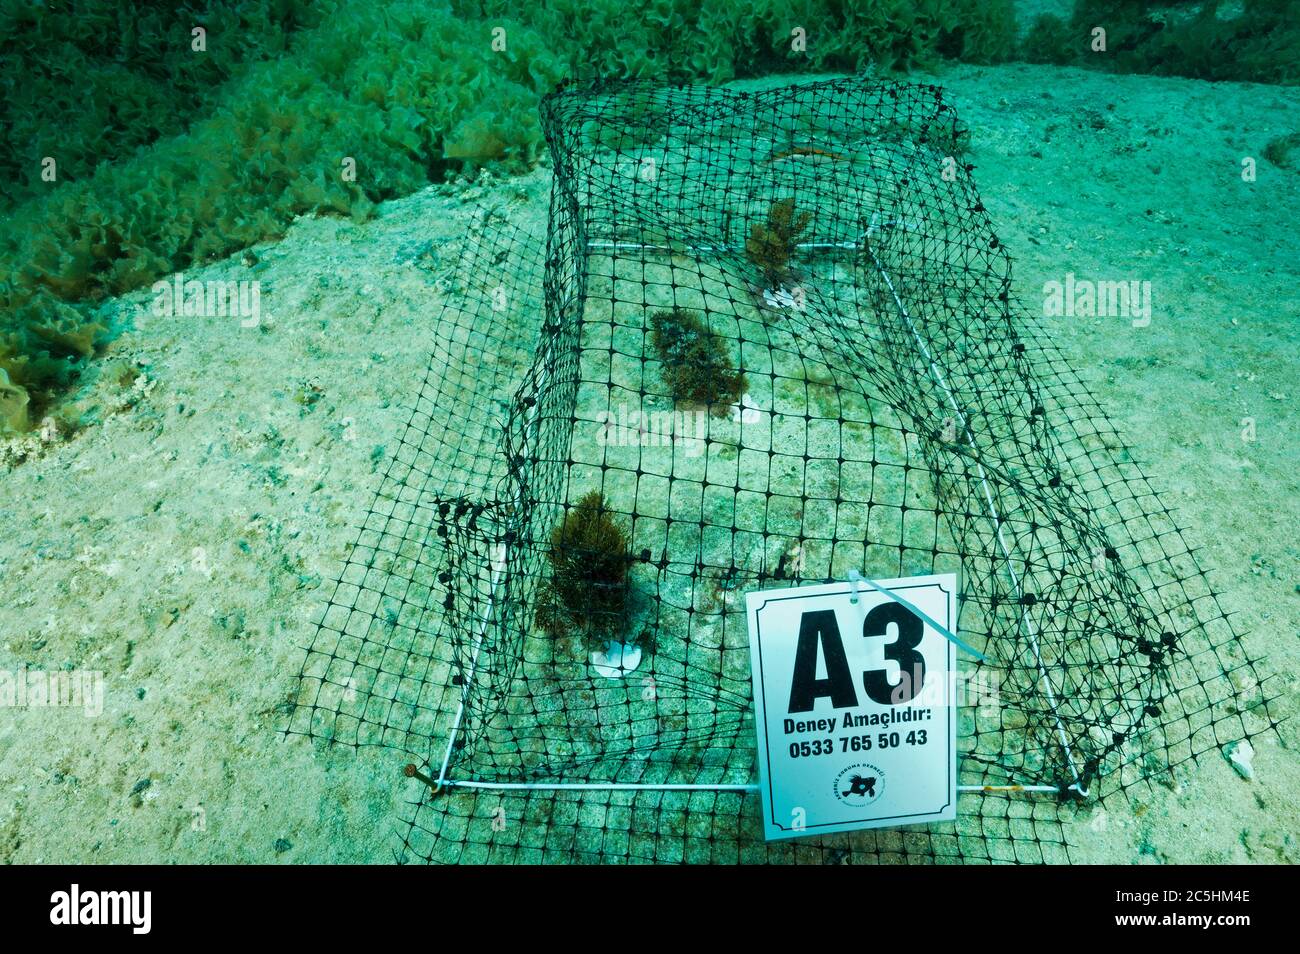 Wissenschaftler Einrichtung Makroalge Experiment Käfige, um die Wirkung von invasiven Rabbitfish Siganidae in türkischen Mittelmeer Marine geschützte Ar Stockfoto